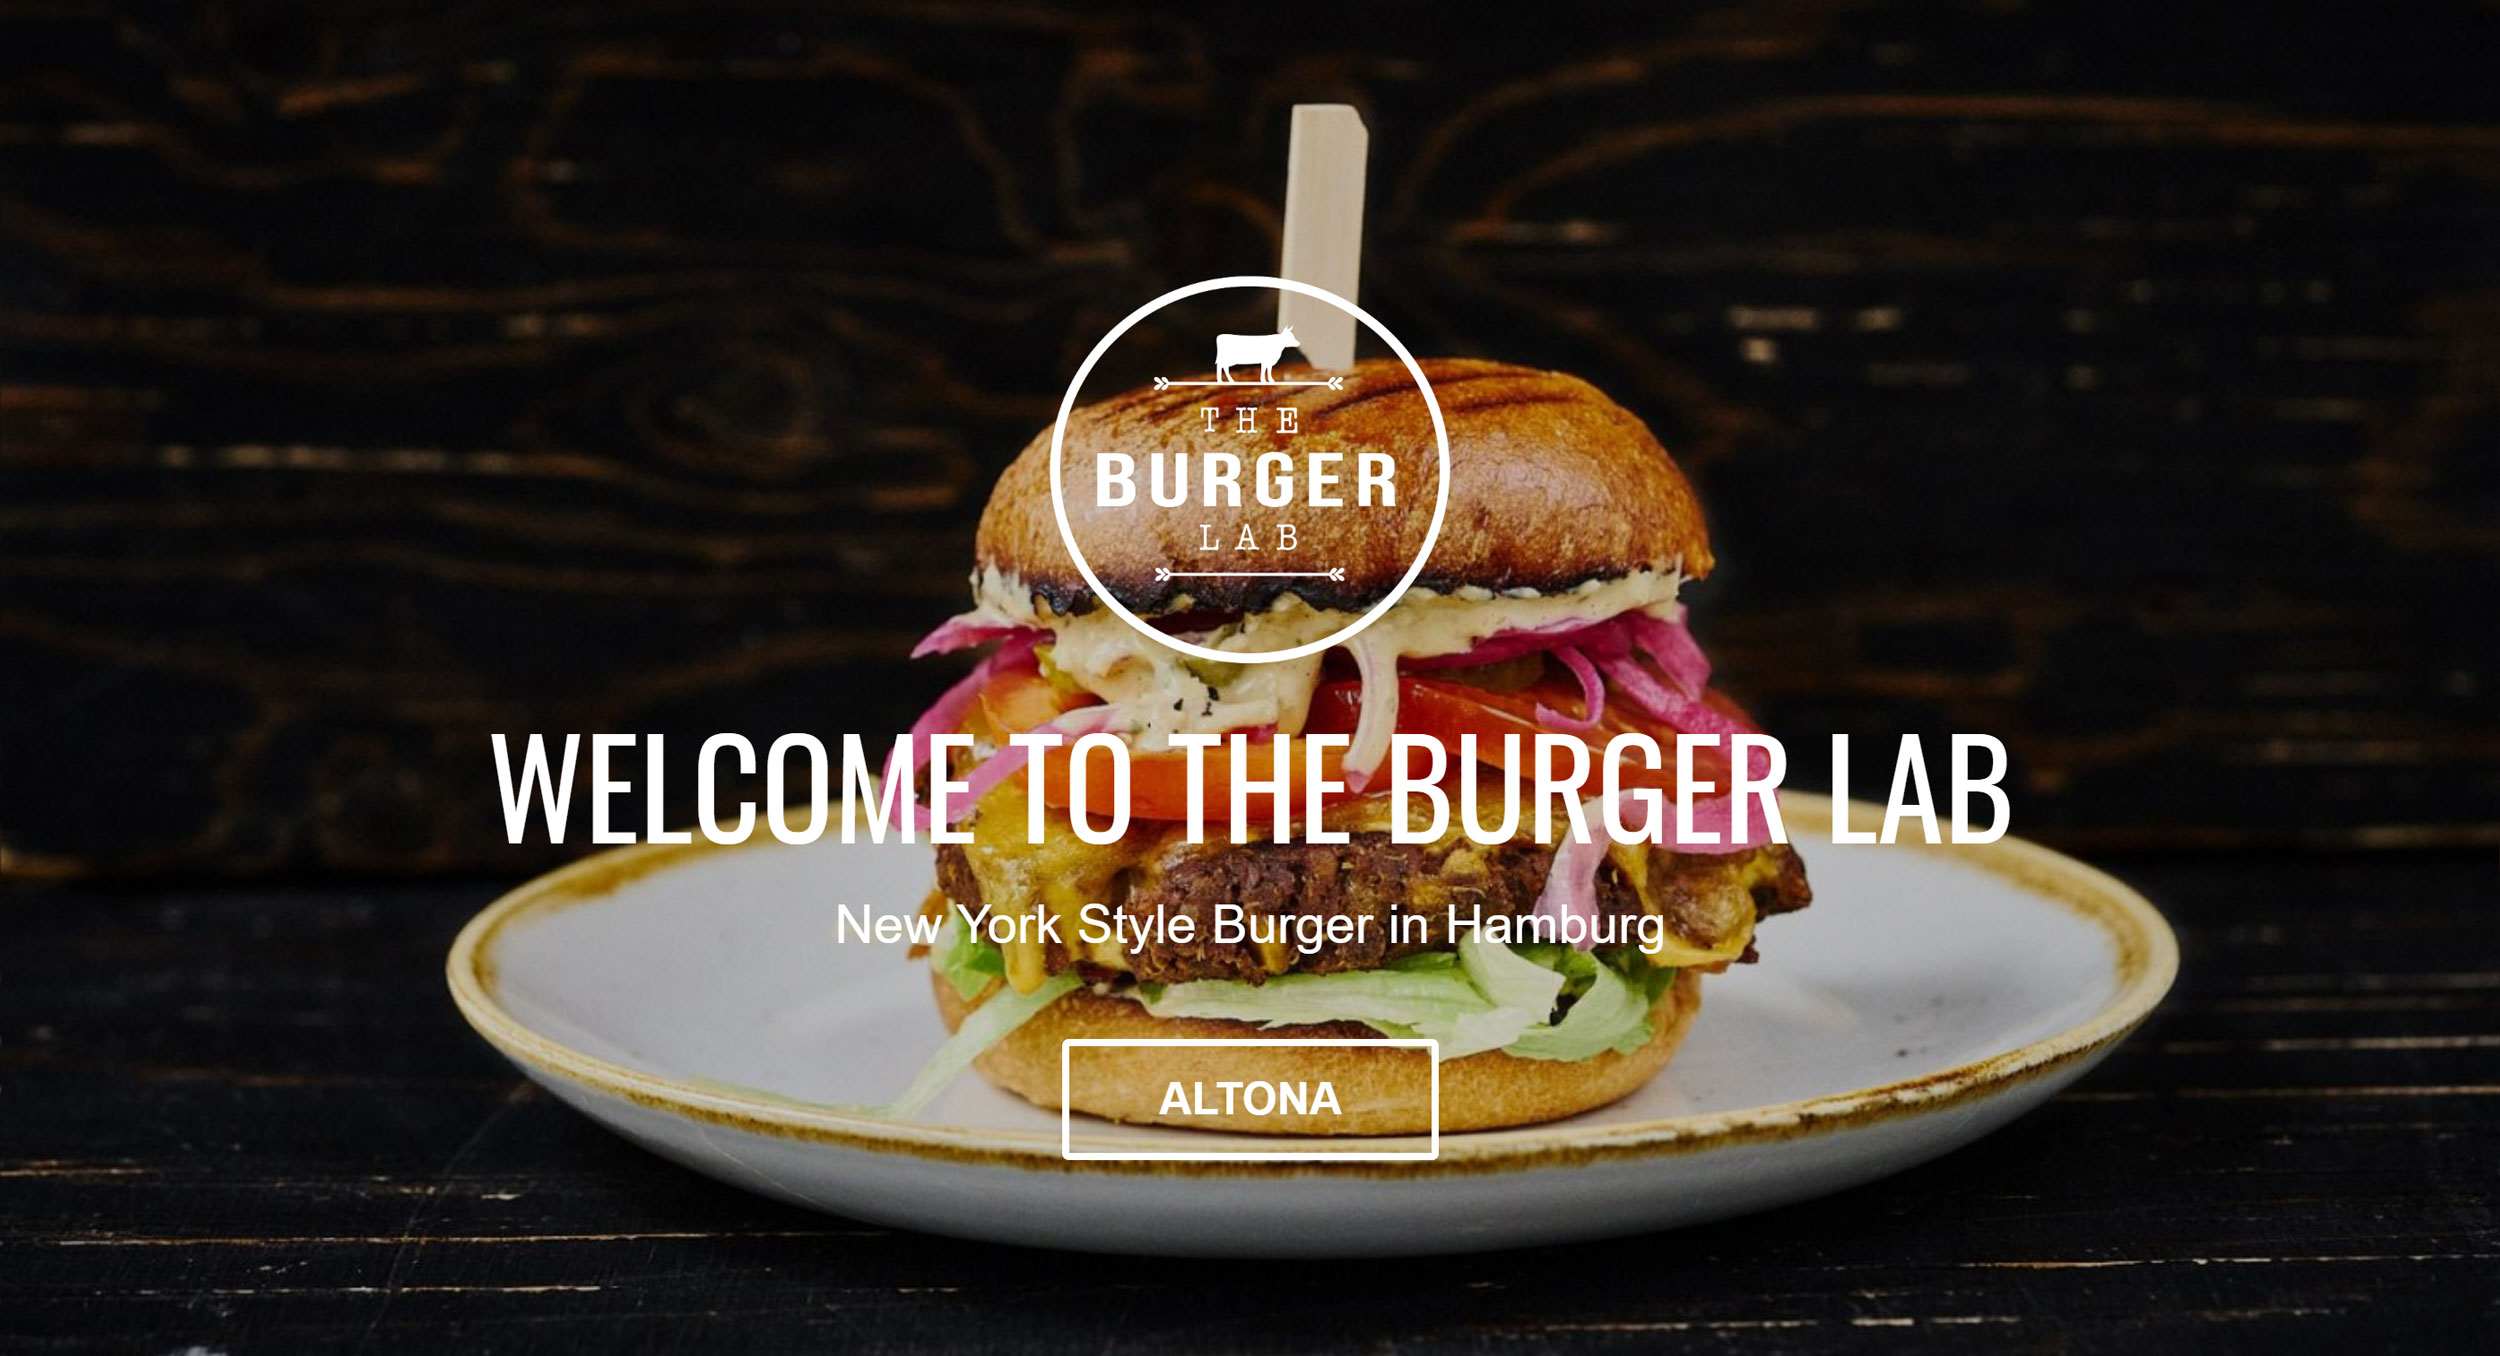 The Burger Lab